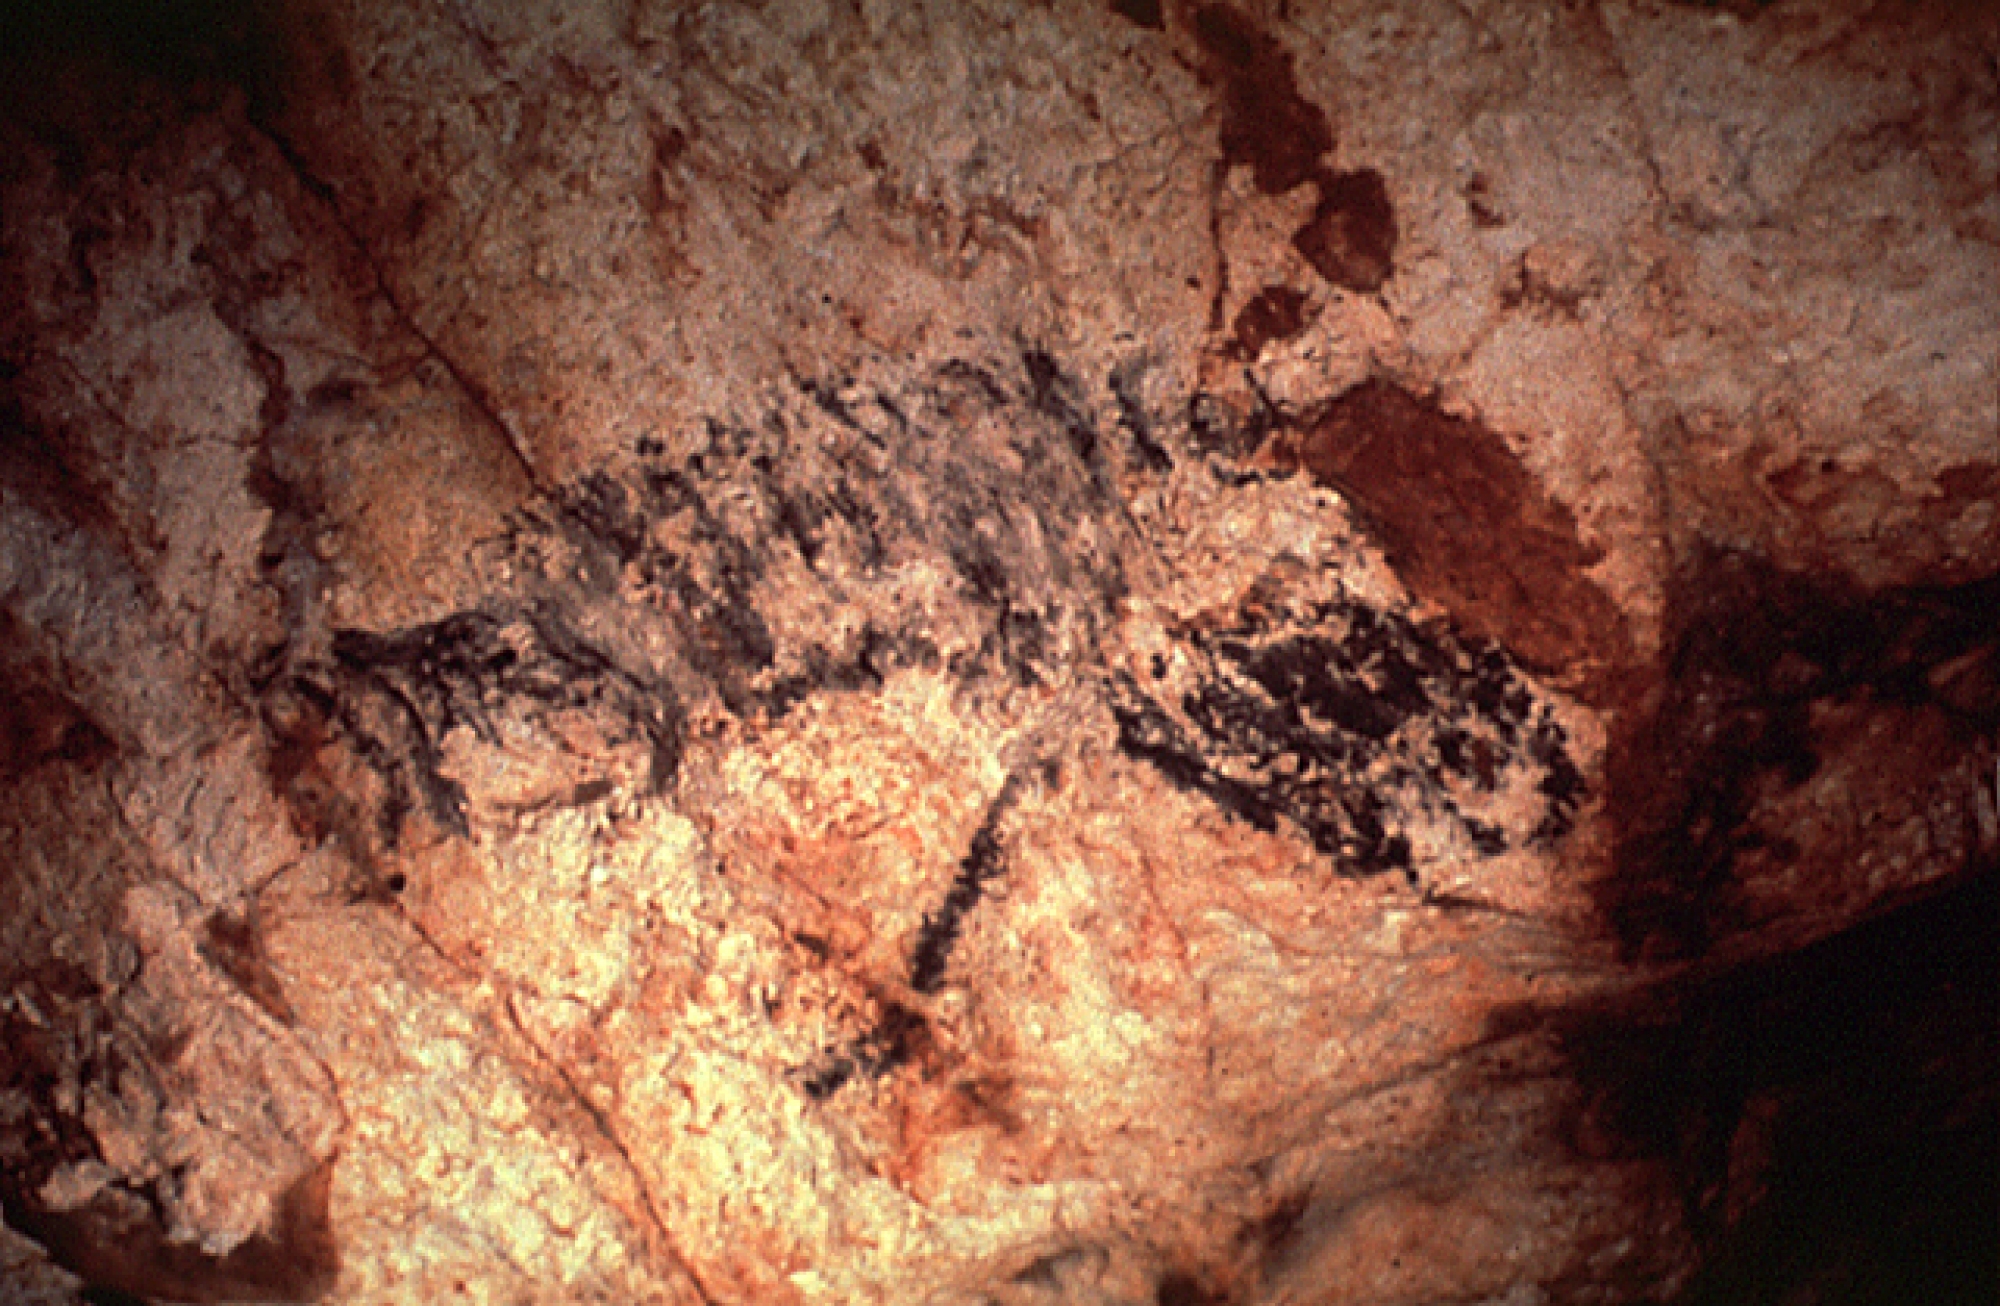 Tourisme culturel : Les Animaux Terrestres peints dans la grotte Cosquer